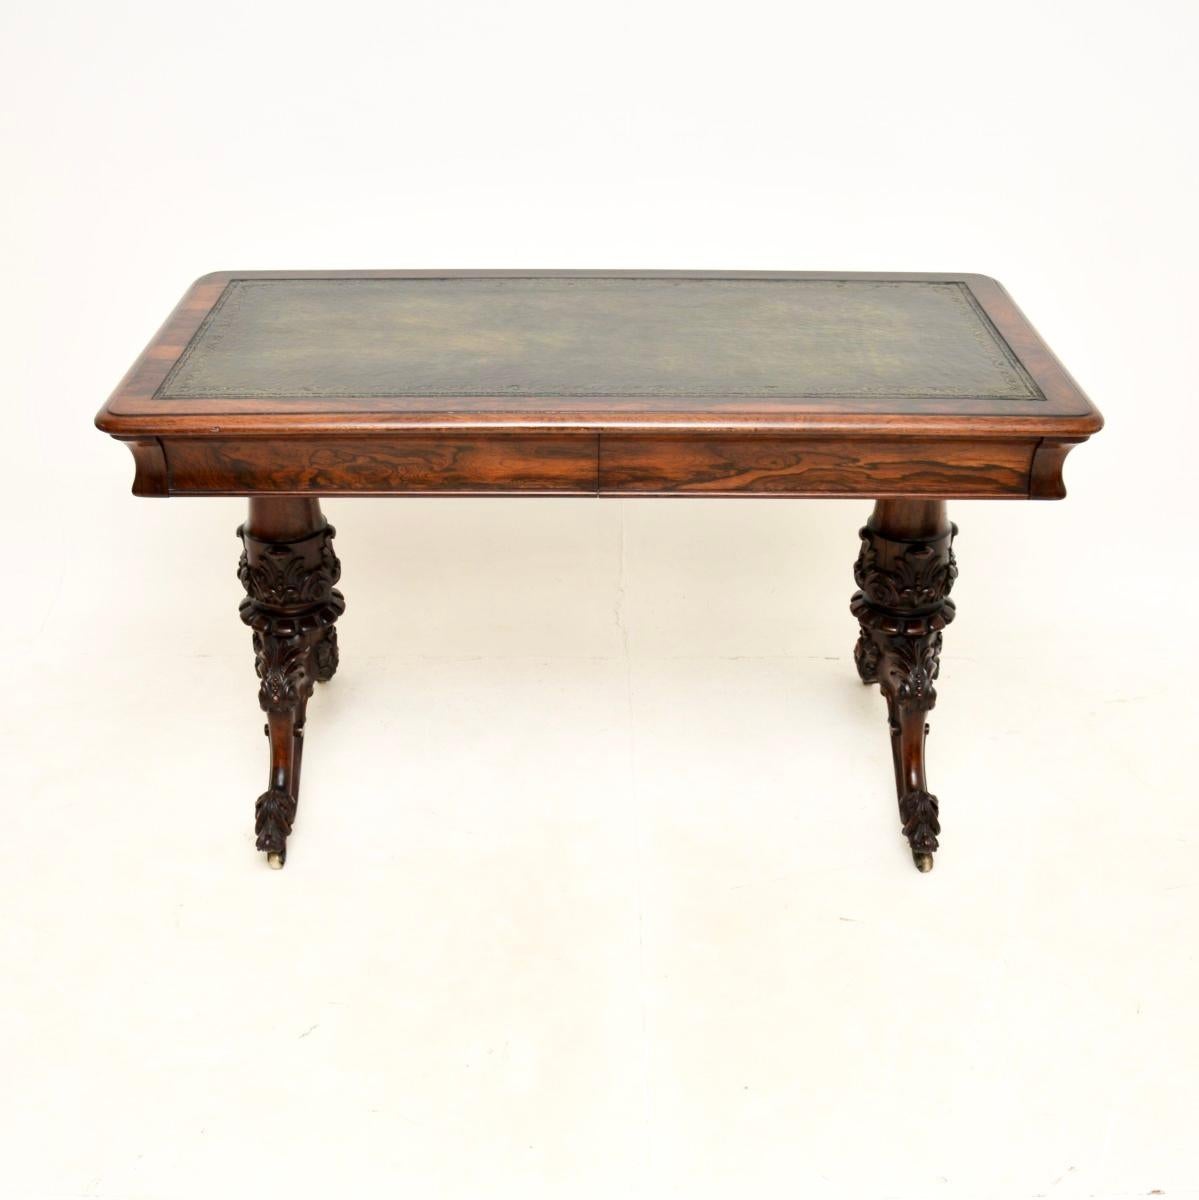 Magnifique table à écrire / bureau William IV. Fabriqué en Angleterre, il date de la période 1830-1840.

D'une qualité irréprochable, il repose sur des pieds robustes aux sculptures absolument magnifiques et sur des roulettes en laiton. Le plateau a